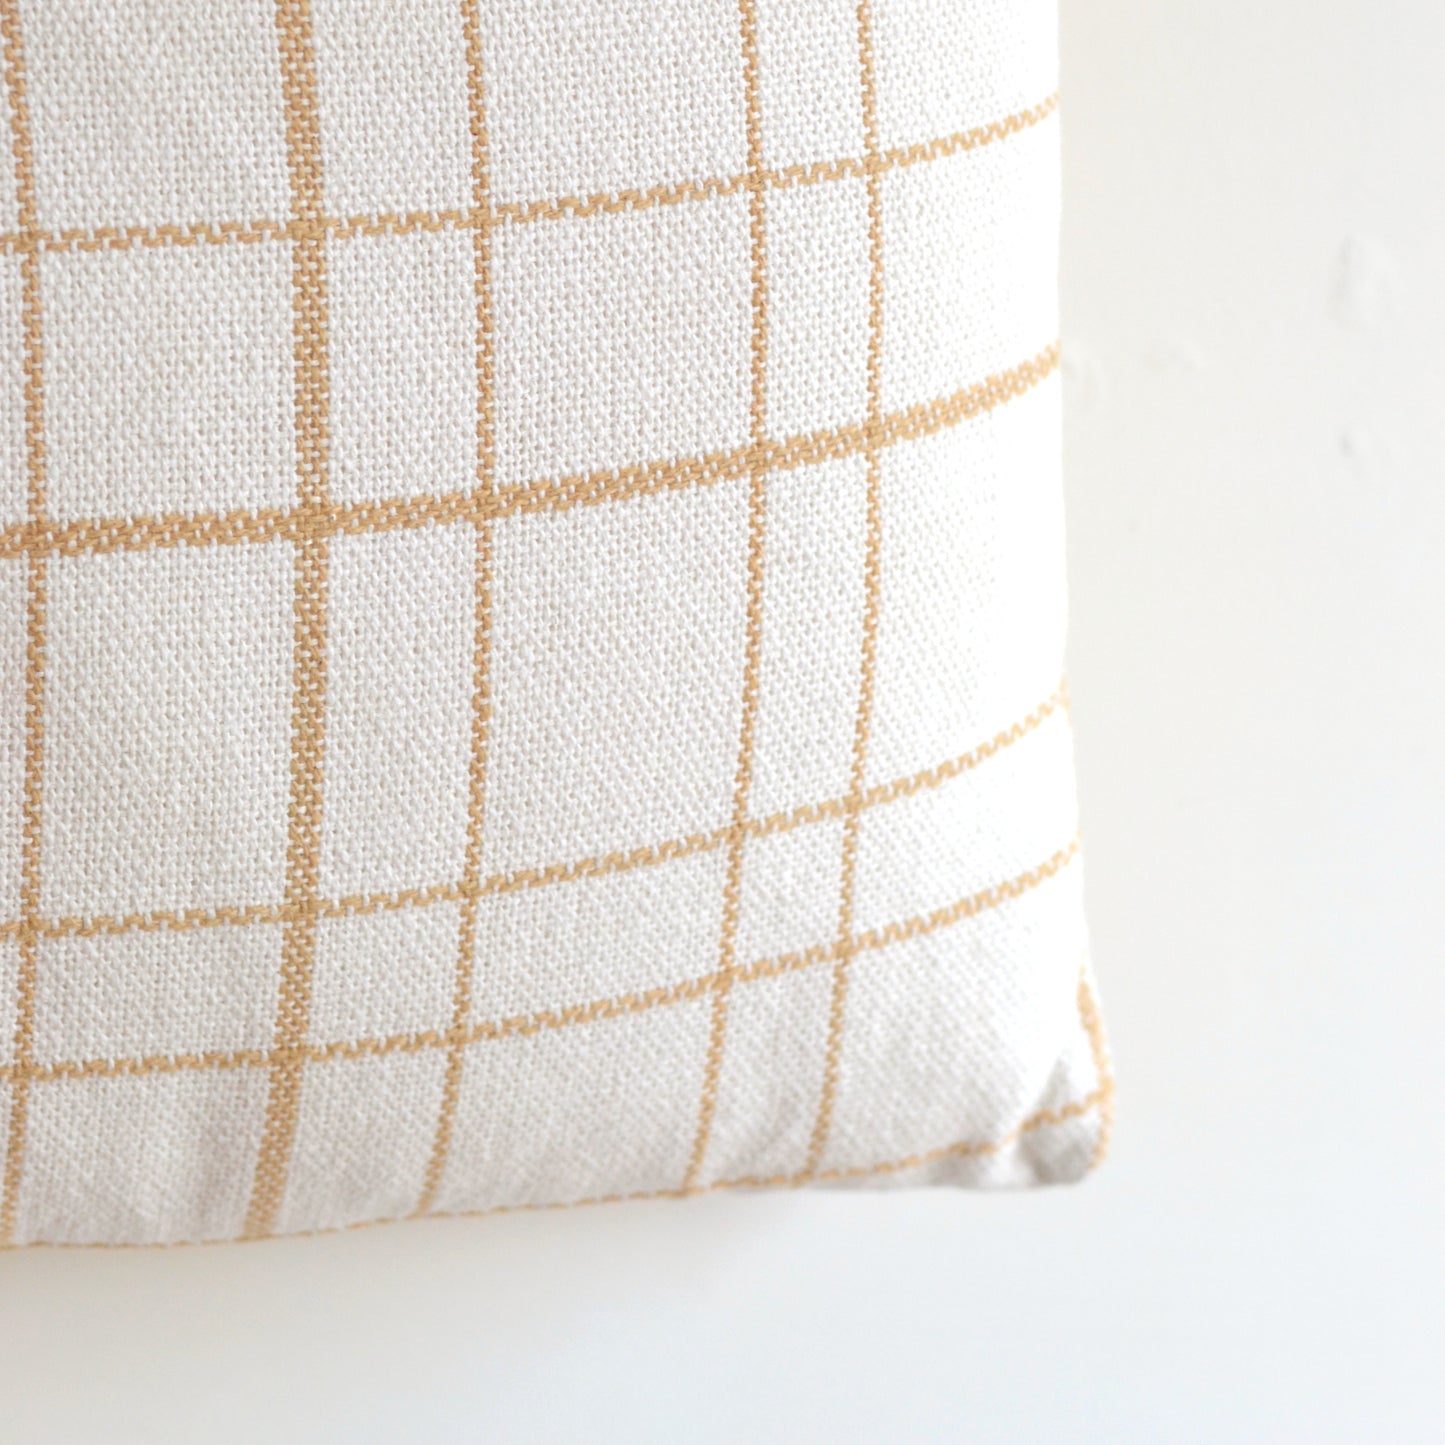 Foreside Home & Garden | 18x18 Hand Woven Eileen Mod Plaid Pillow Tan